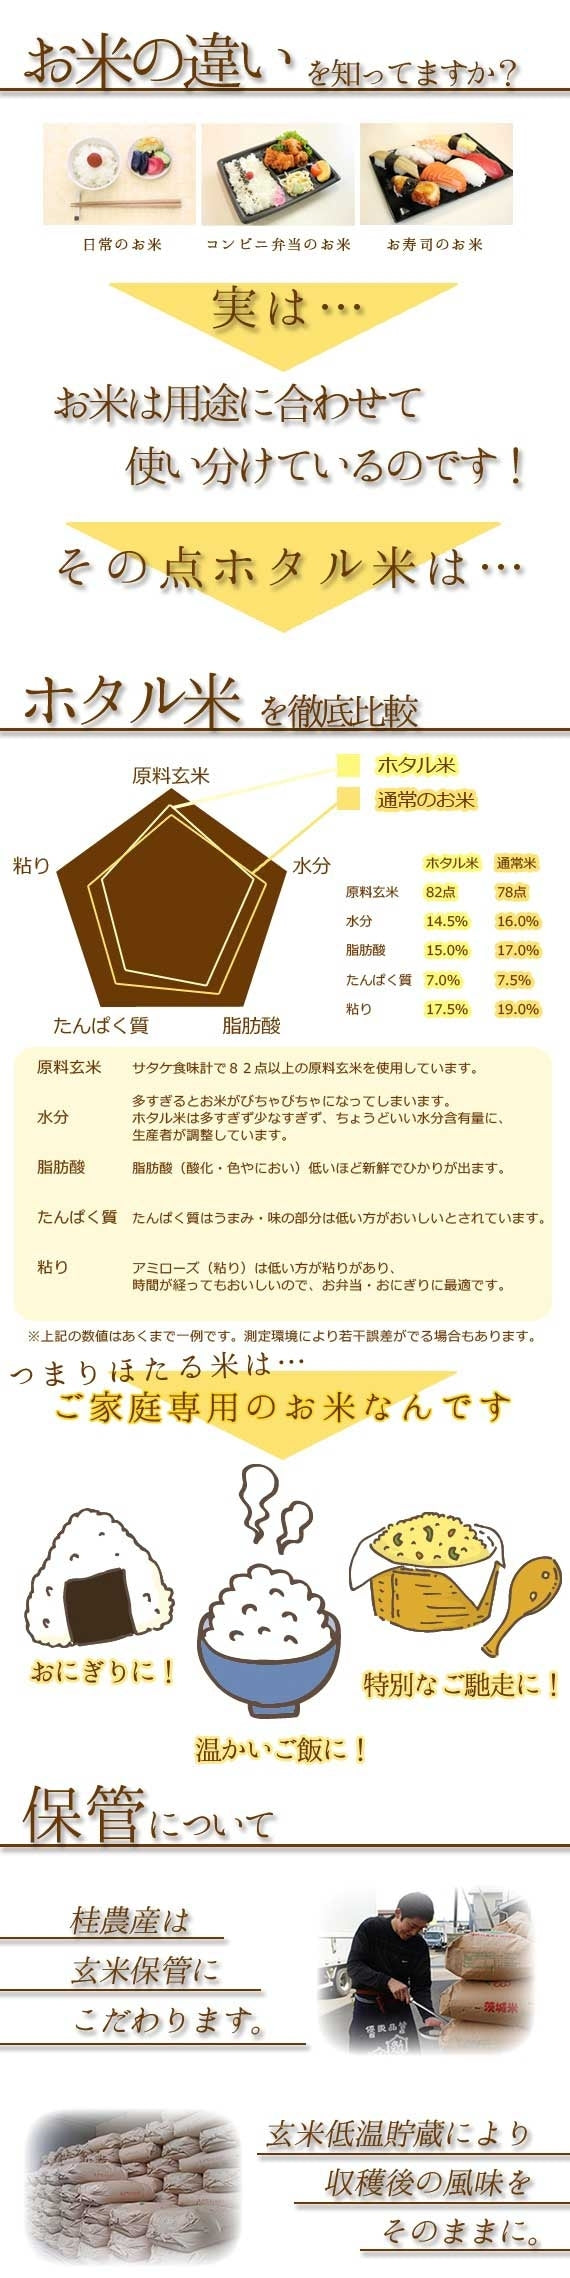 厳選コシヒカリ那珂川の清流ホタル米【送料込み】 5kg